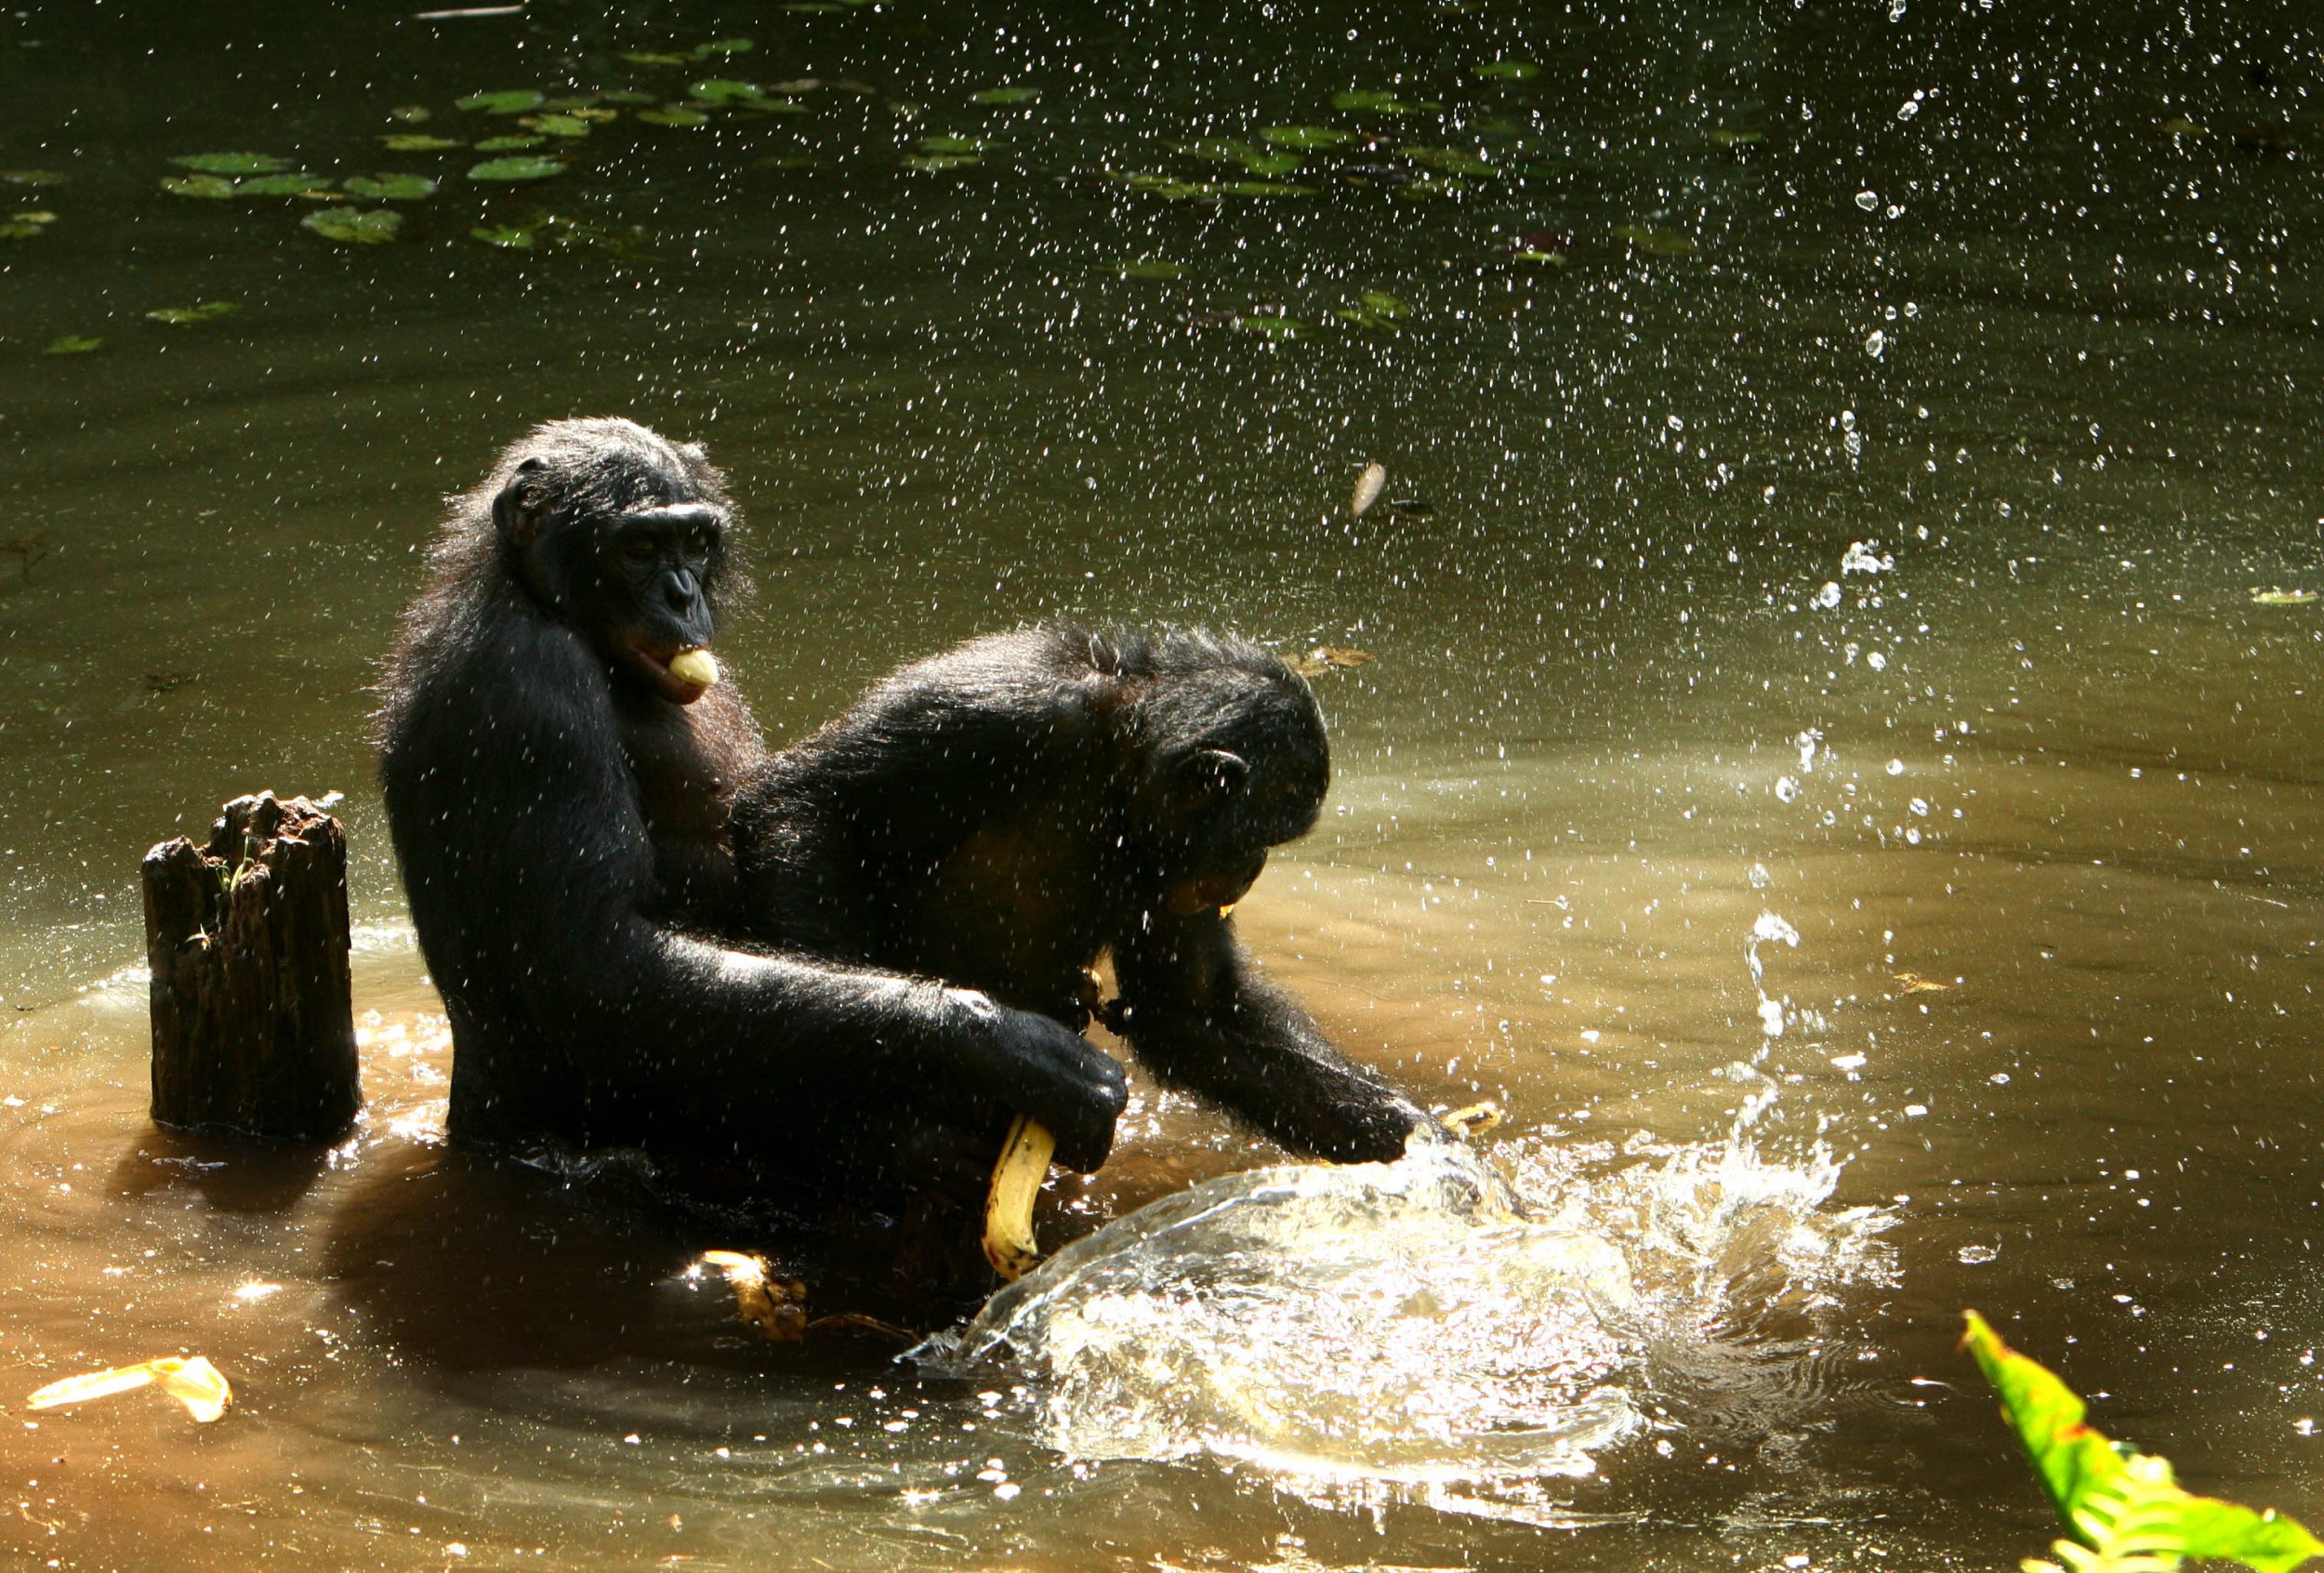 Bonobos 